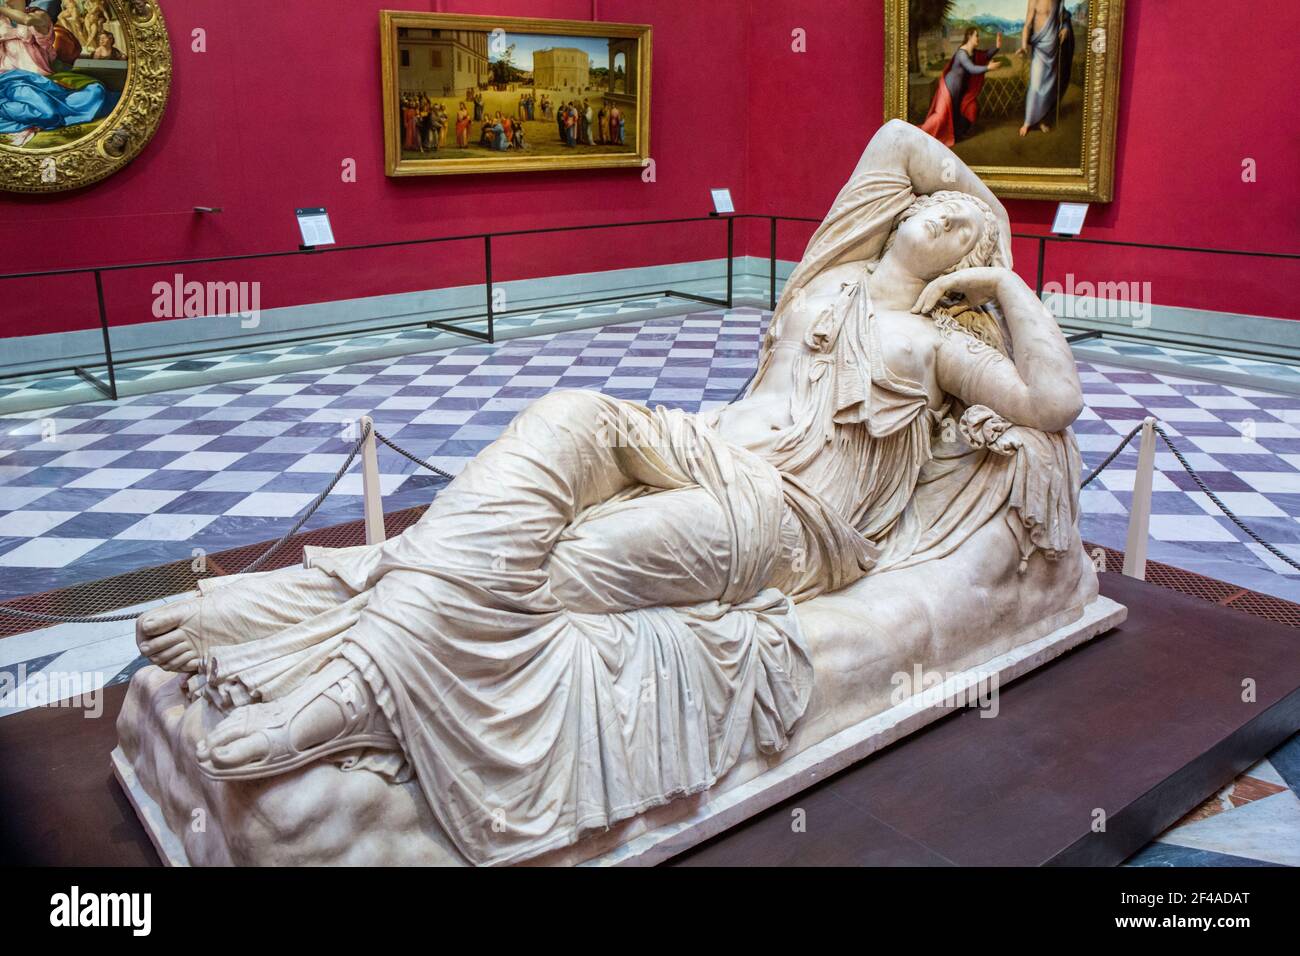 Florence, Italie. Sculpture de l'Ariadne dormant en marbre asiatique. 2e siècle AD. Situé dans la Galerie des Offices. (À usage éditorial uniquement) Banque D'Images